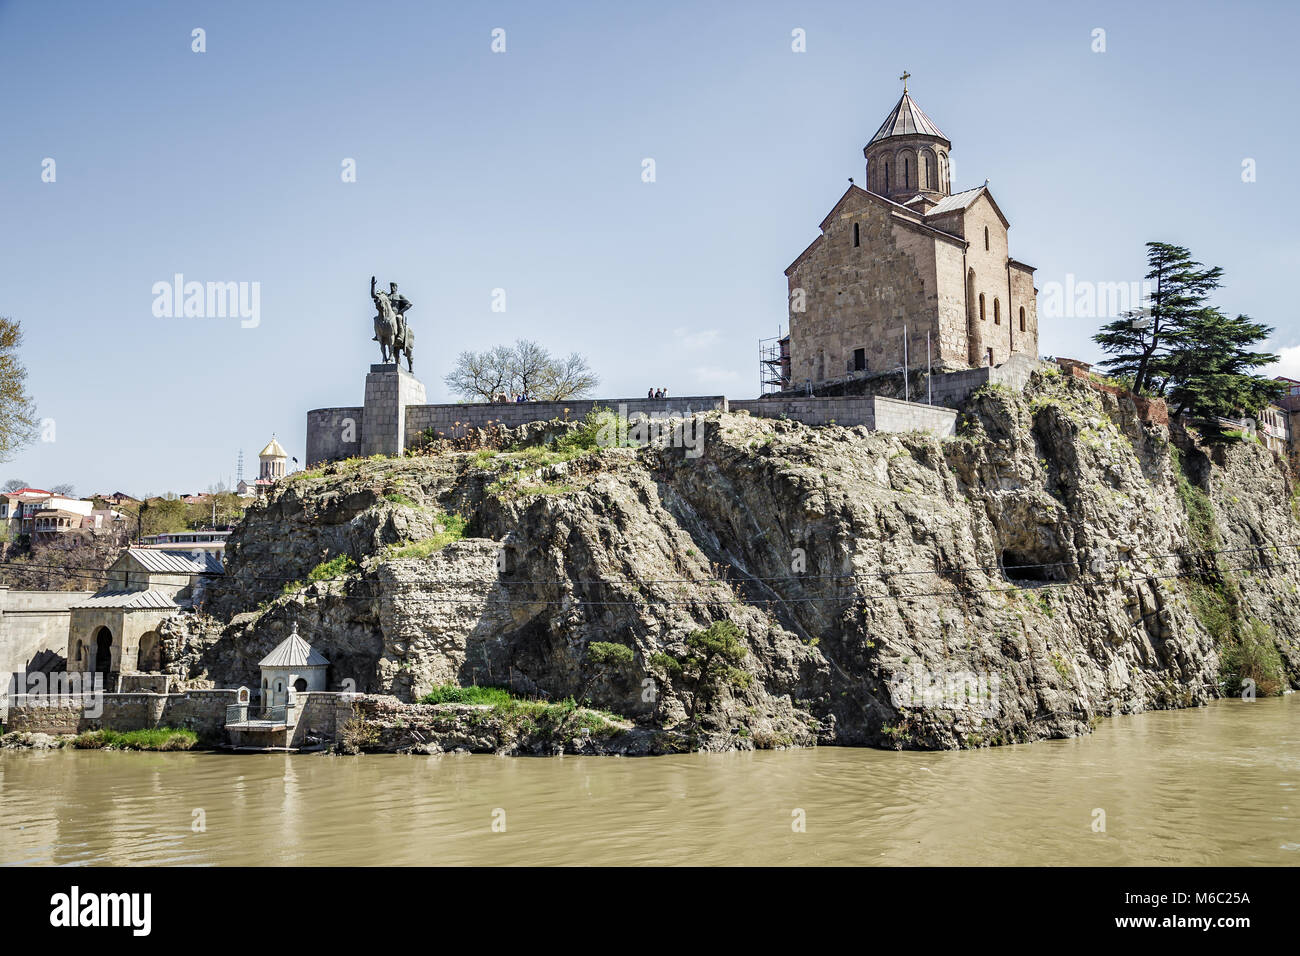 Monumento a Tsar Vakhtang Gorgasal vicino alla antica fortezza del XIII secolo a Tbilisi, Georgia. Vista dal fiume Kura. Aprile 17, 2015 Foto Stock